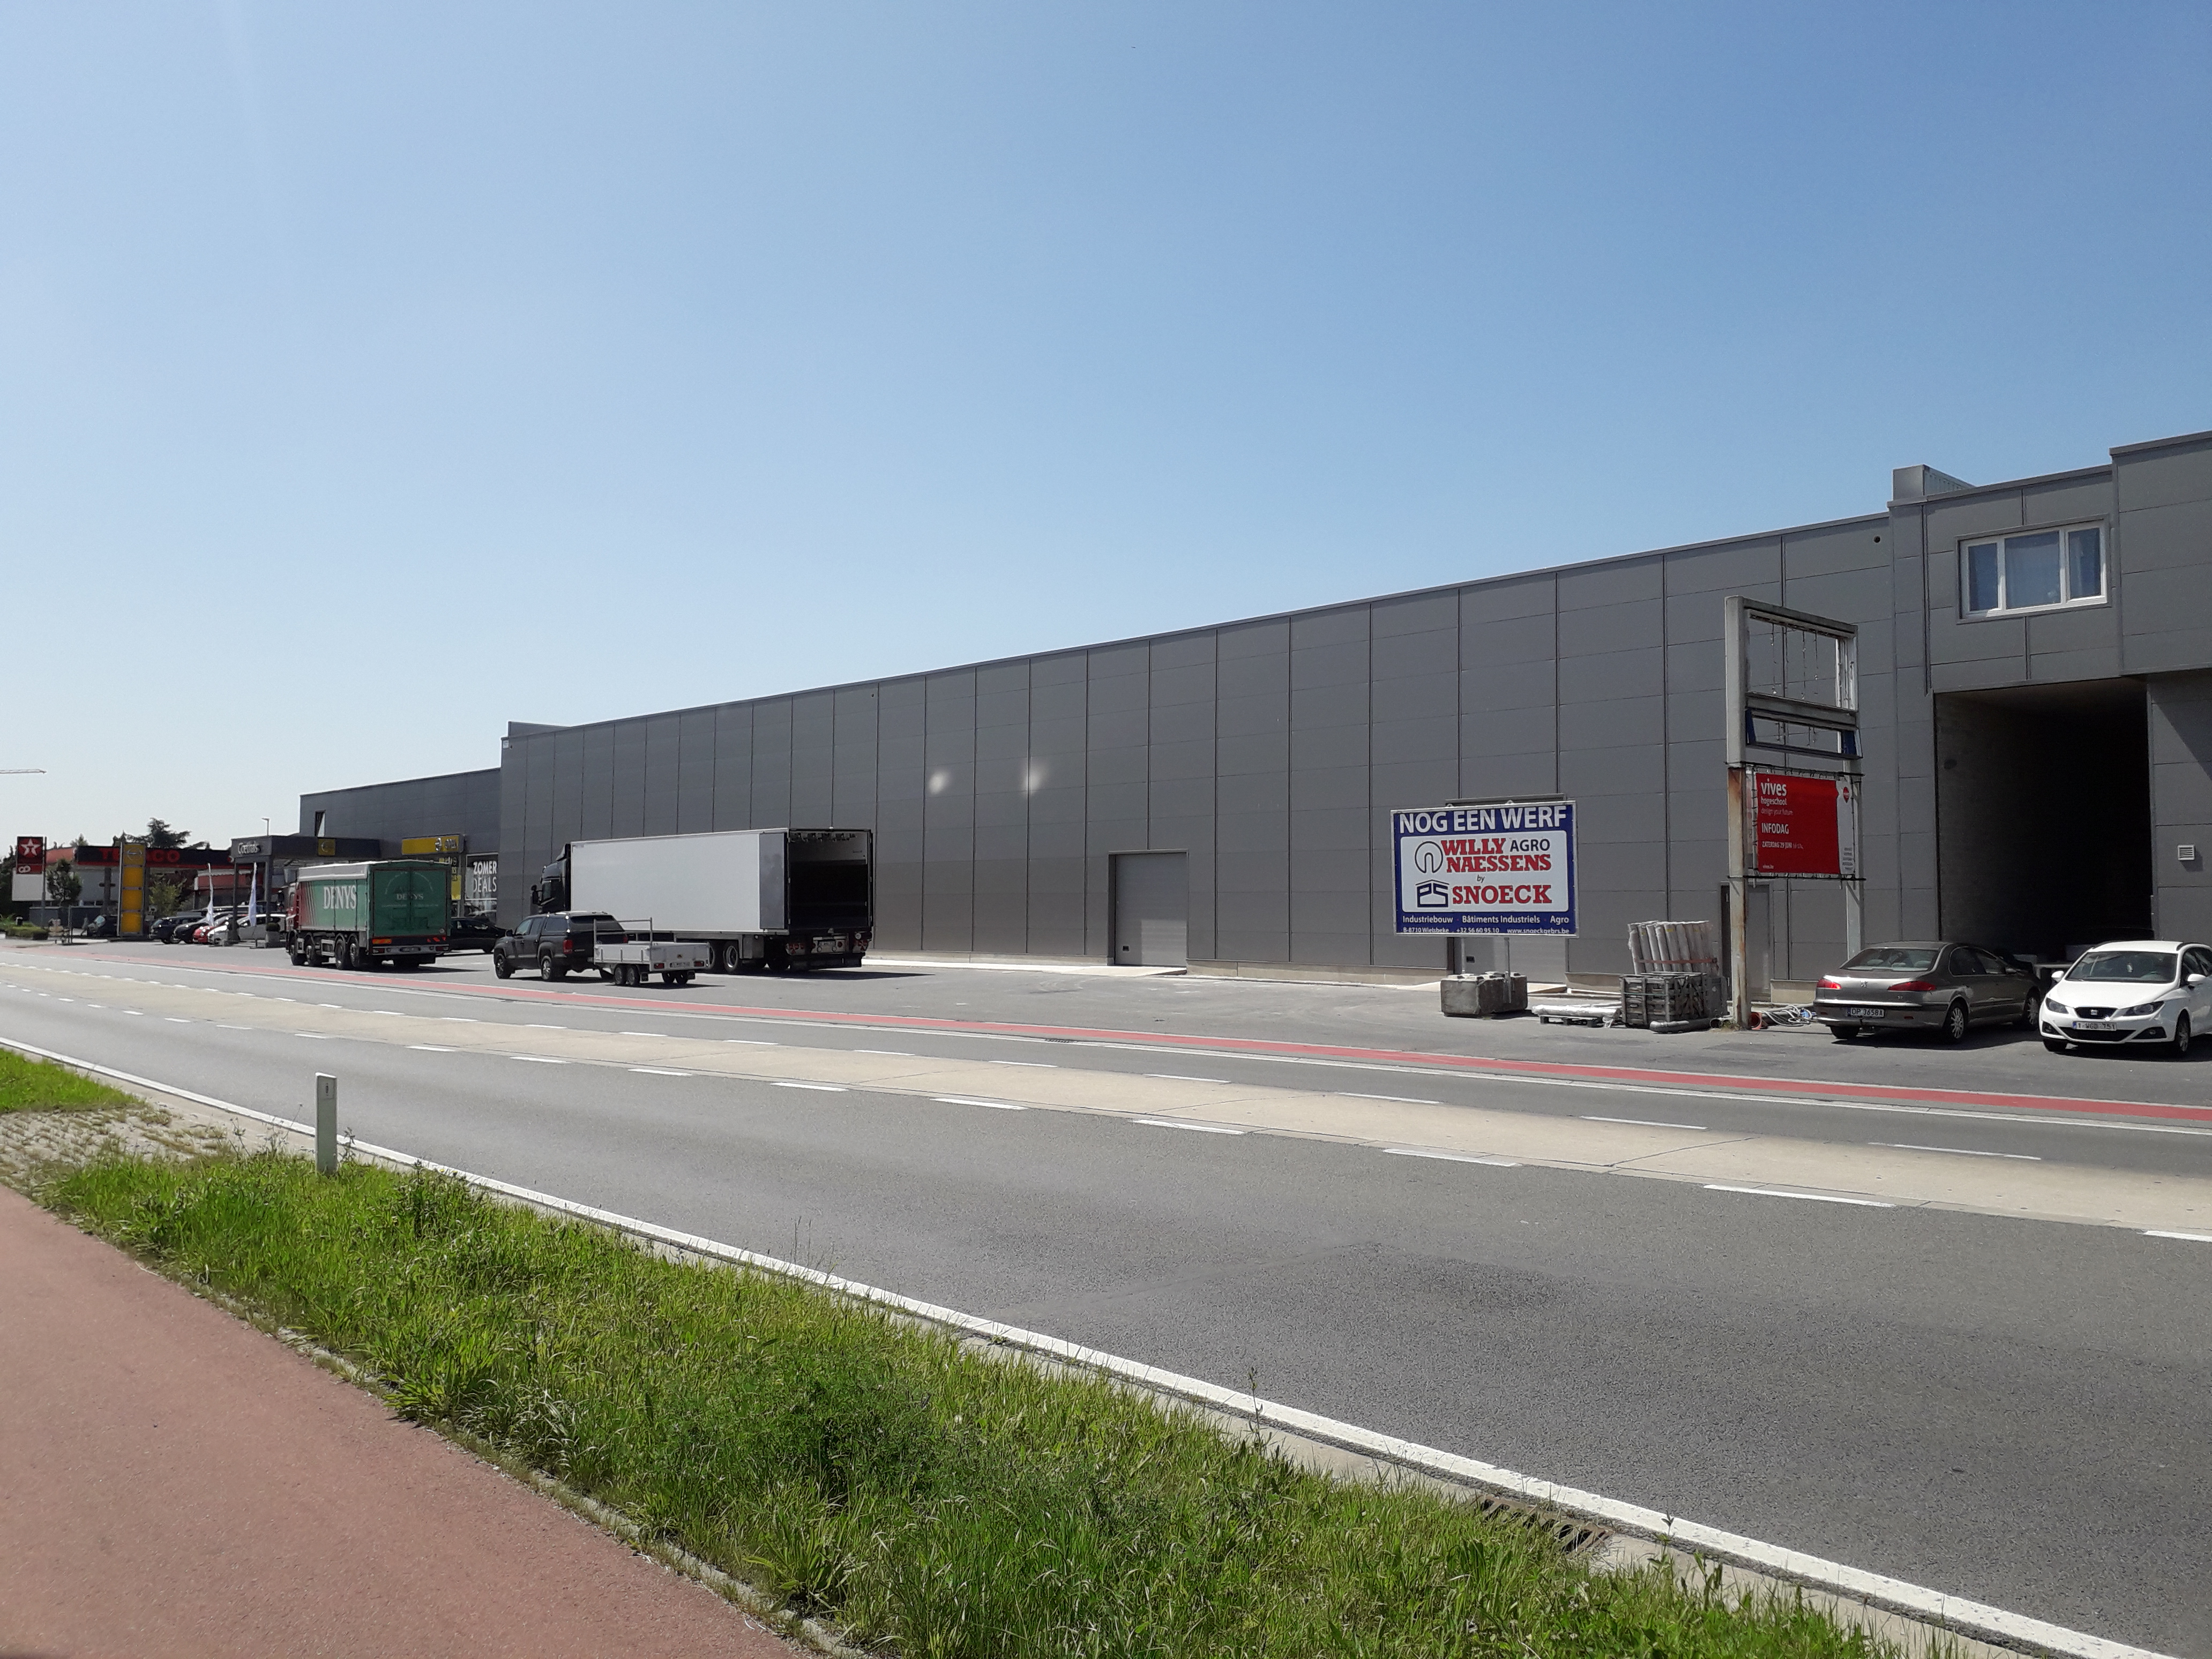 Snoeck - Industrial Buildings -  Van Hoornweder Slachthuis